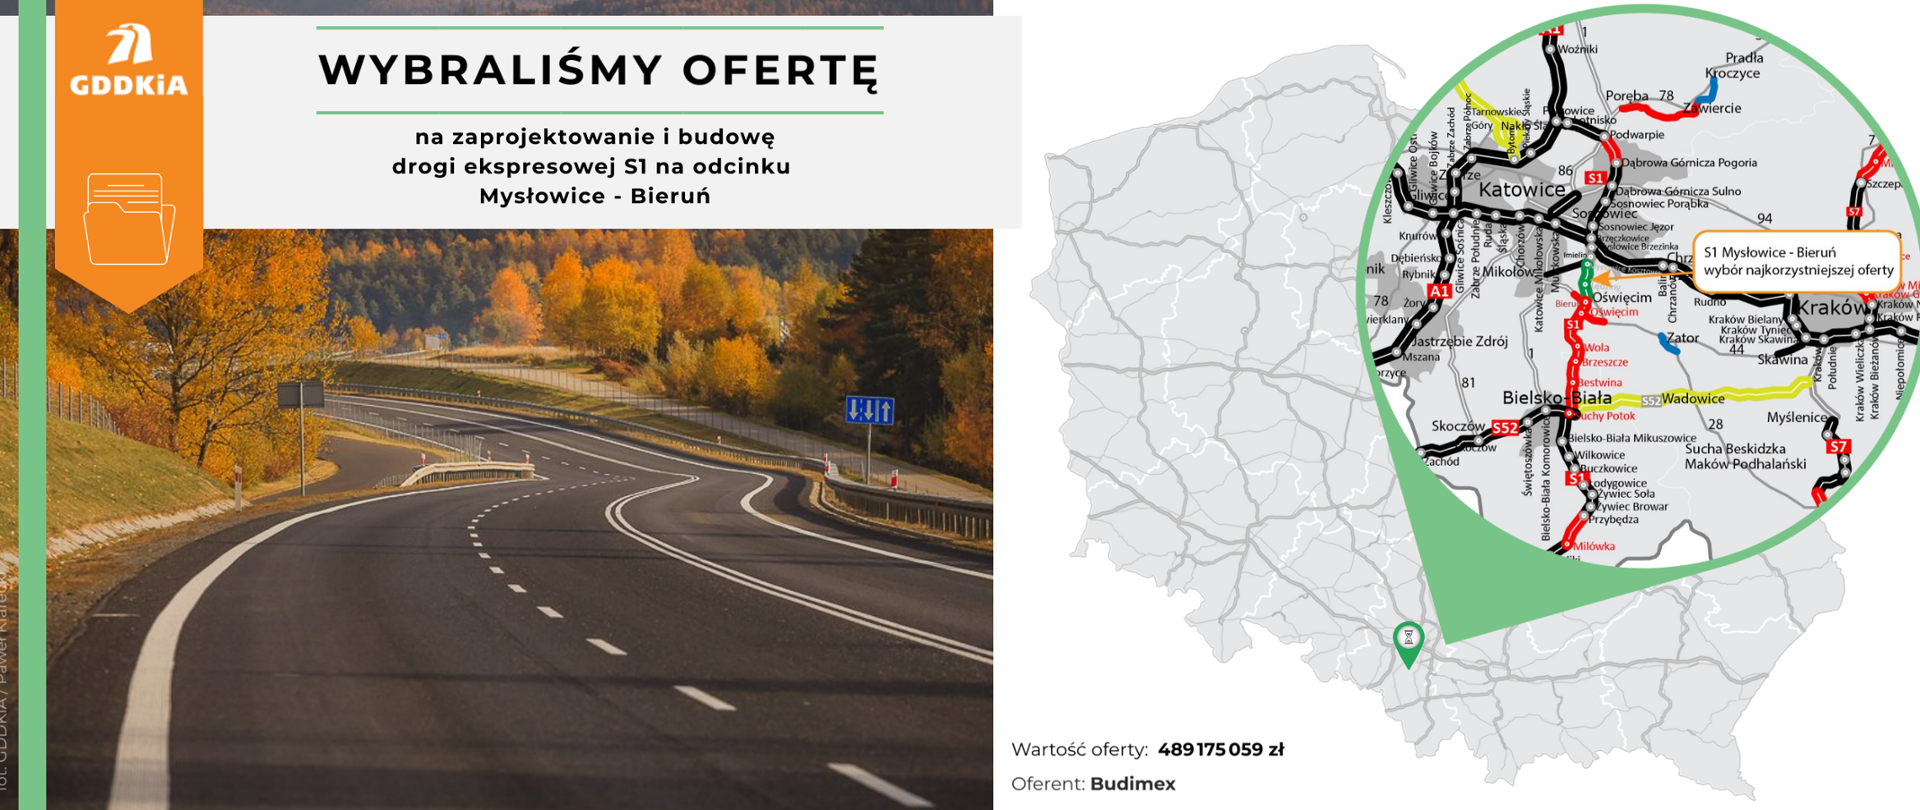 Grafika składająca się z fotografii drogi ekspresowej S1 oraz mapy ze wskazaną lokalizacją odcinka w Polsce i województwie śląskim. Logo GDDKiA. 